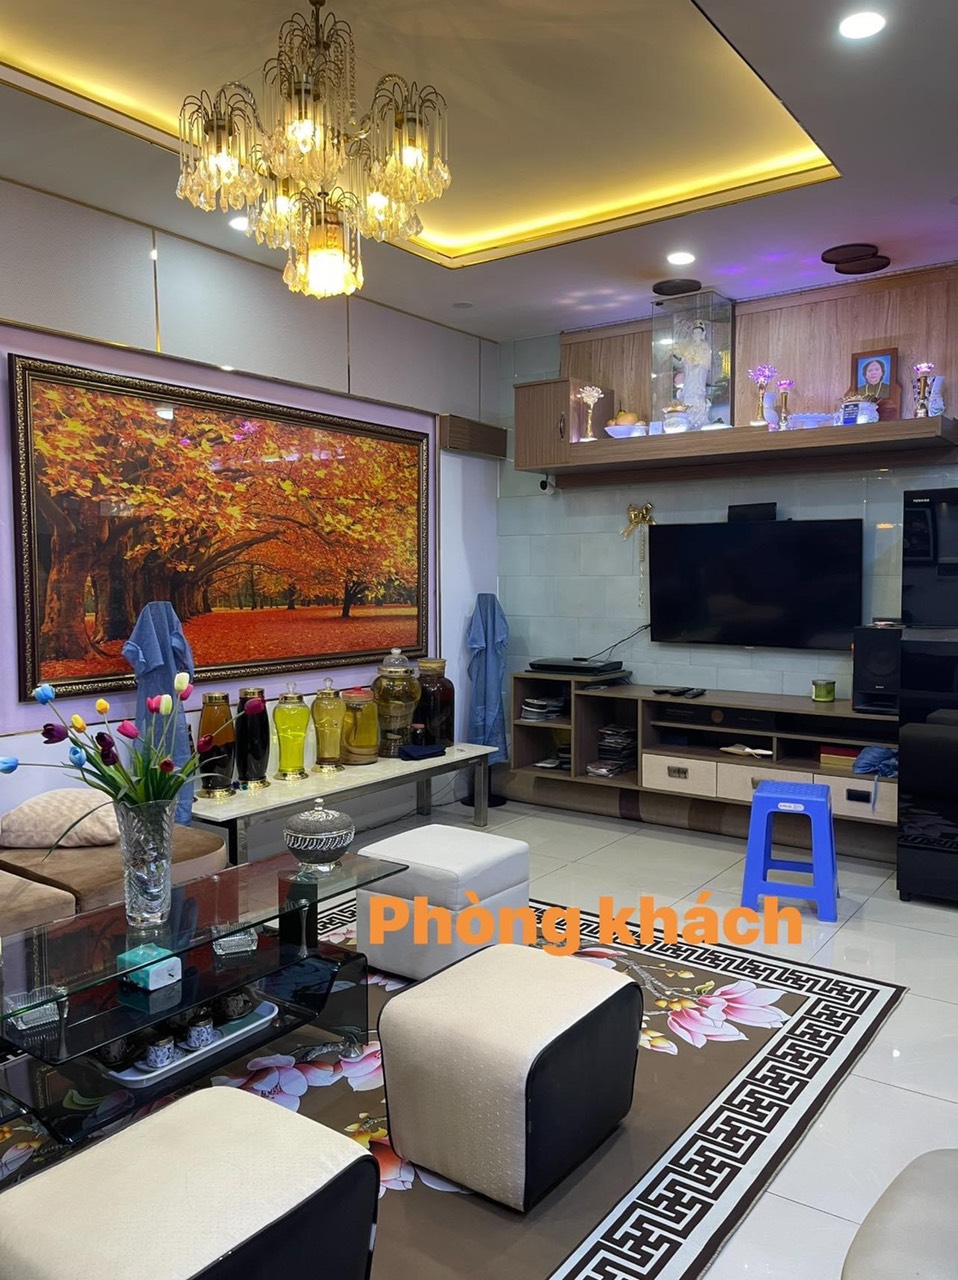 Cho thuê căn hộ Oriental Plaza Tân Phú, 85m2 2PN Full nội thất cao cấp cực đẹp, LH: 0372972566 Hải 